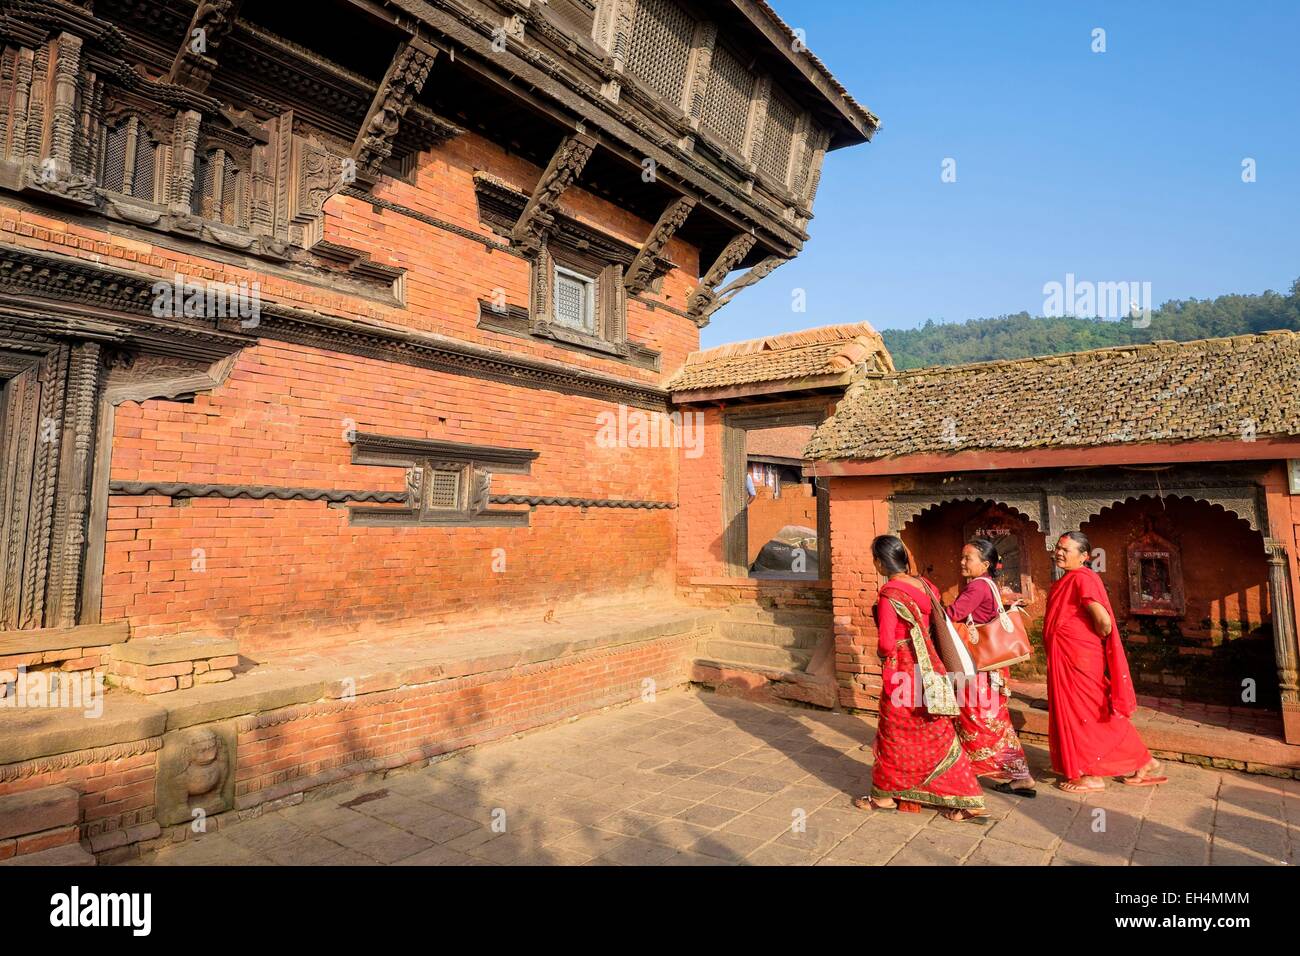 Nepal, Gandaki zone, Gorkha, one of the starting points of the Manaslu Circuit, Gorkha Palace (Former Royal Palace), Newar architecture Stock Photo